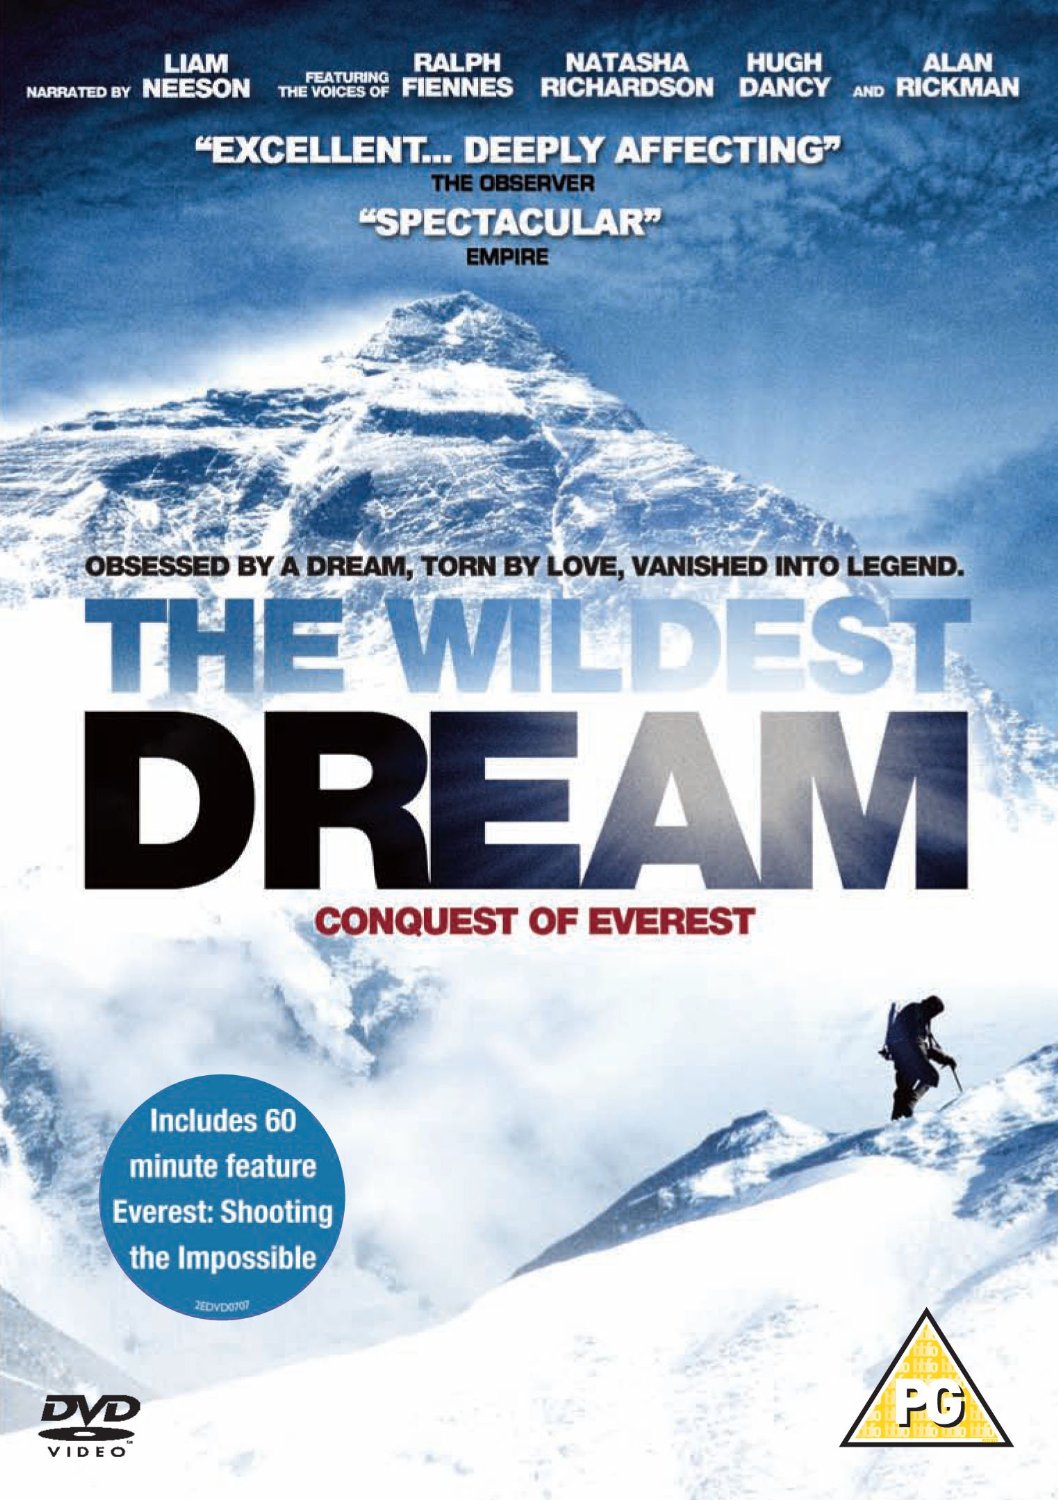 A legmerészebb álom: Everest meghódítása